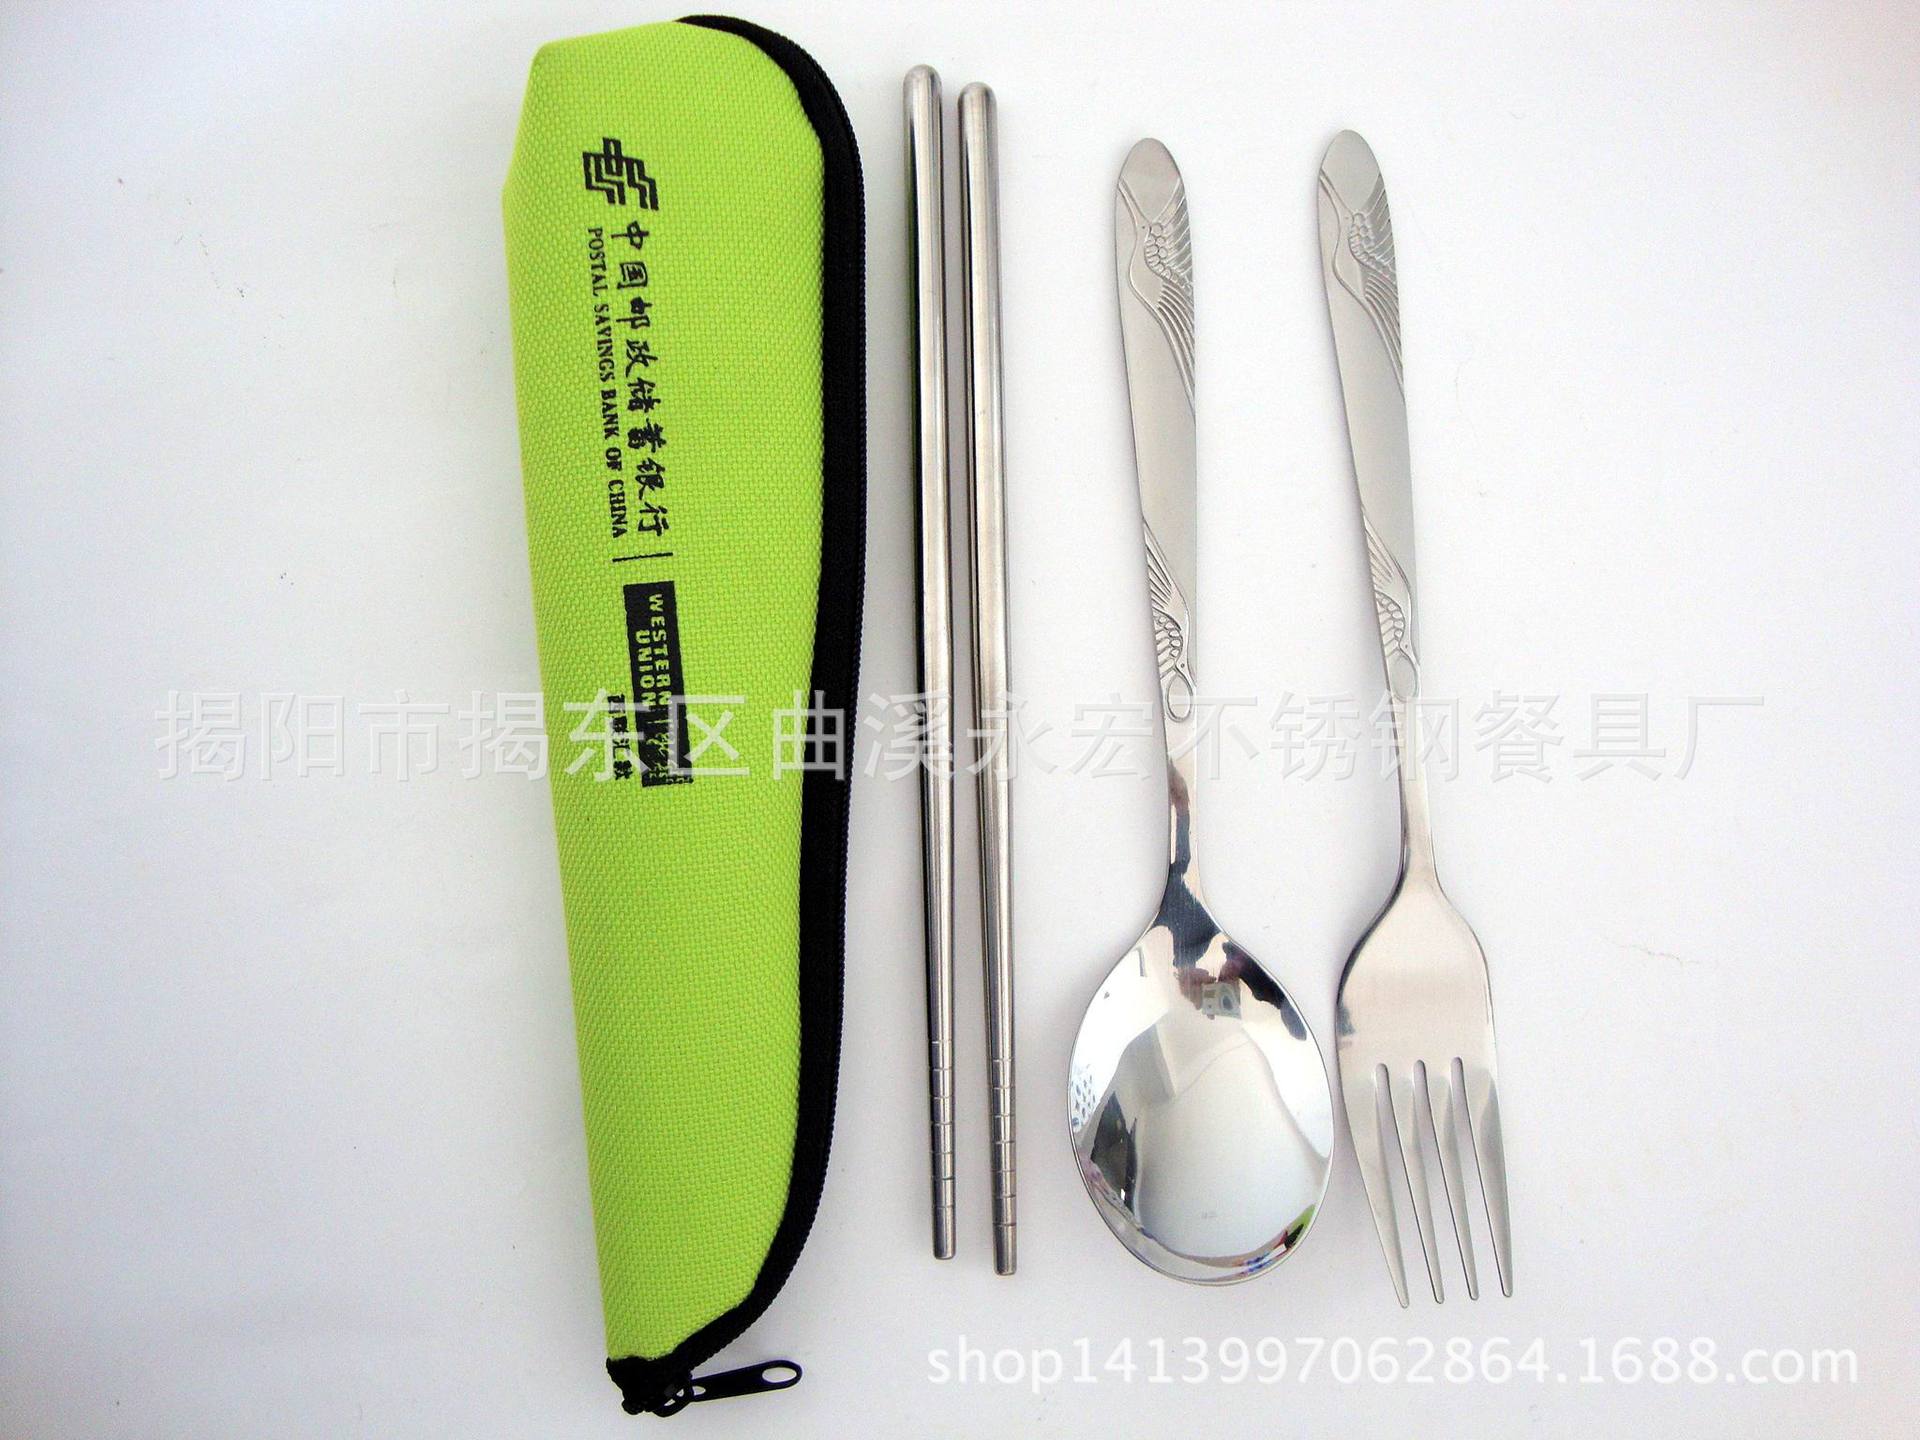 不锈钢筷子勺子叉子 便携式餐具三件套 帆布袋套装 可印LOGO 厂家